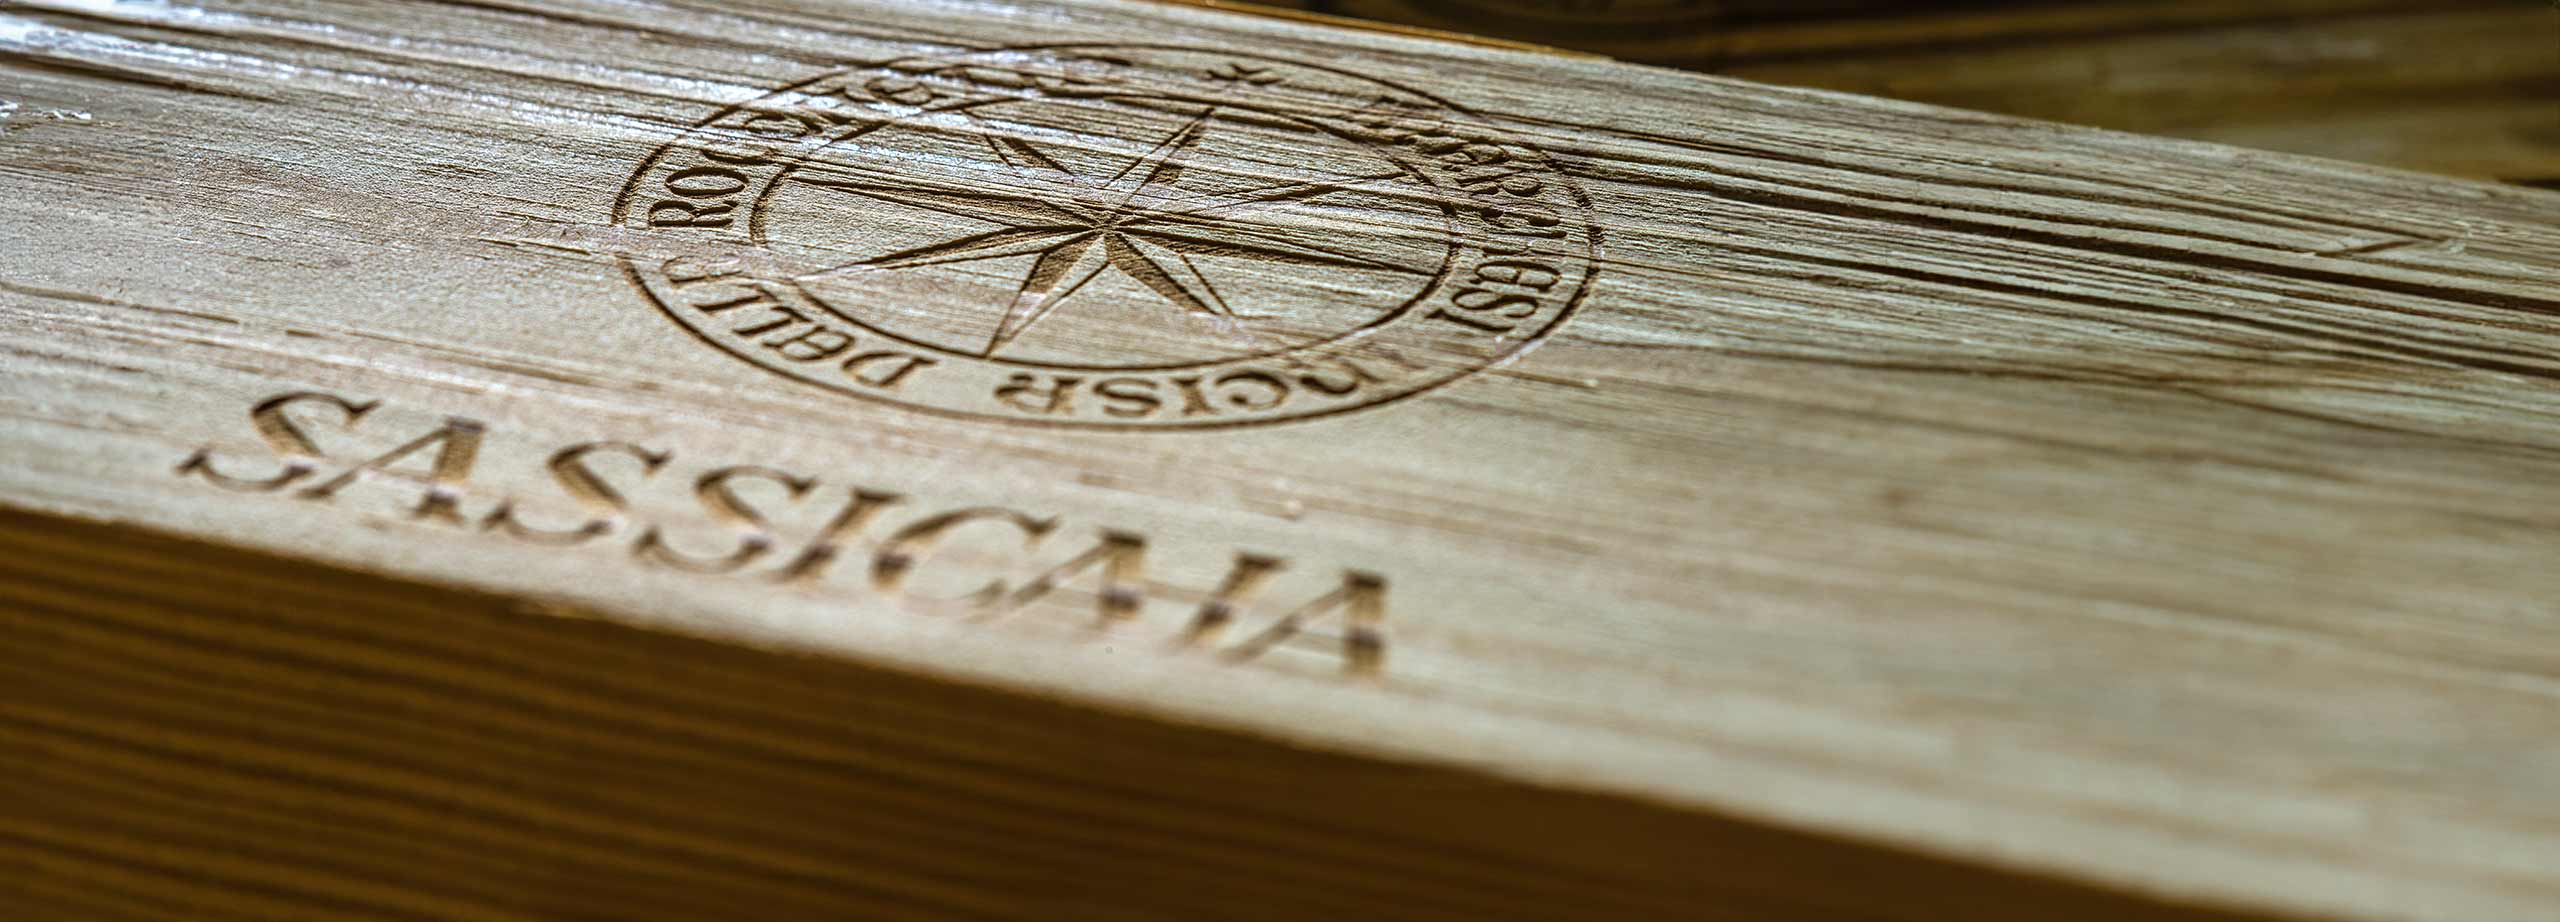 Sassicaia Logo auf Holz